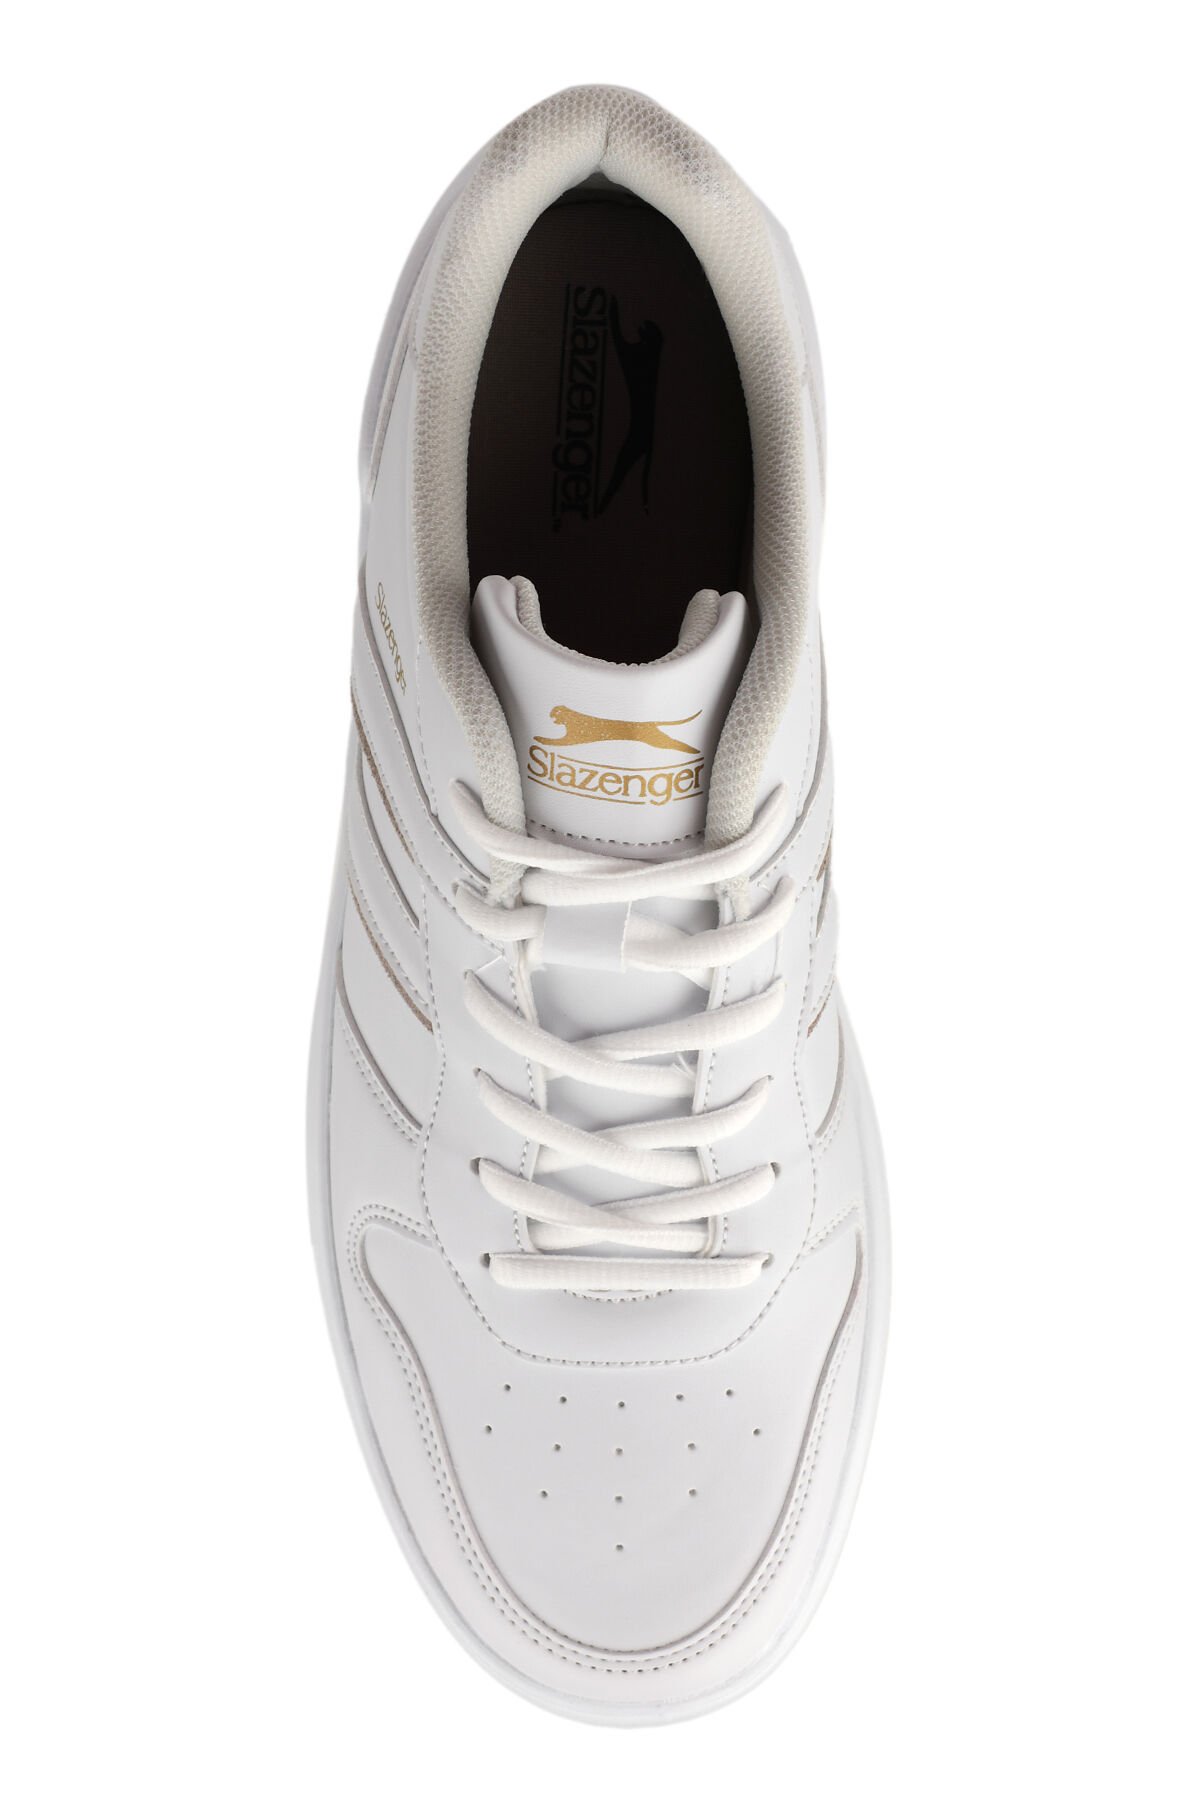 Slazenger BERRY Sneaker Erkek Ayakkabı Beyaz - Thumbnail